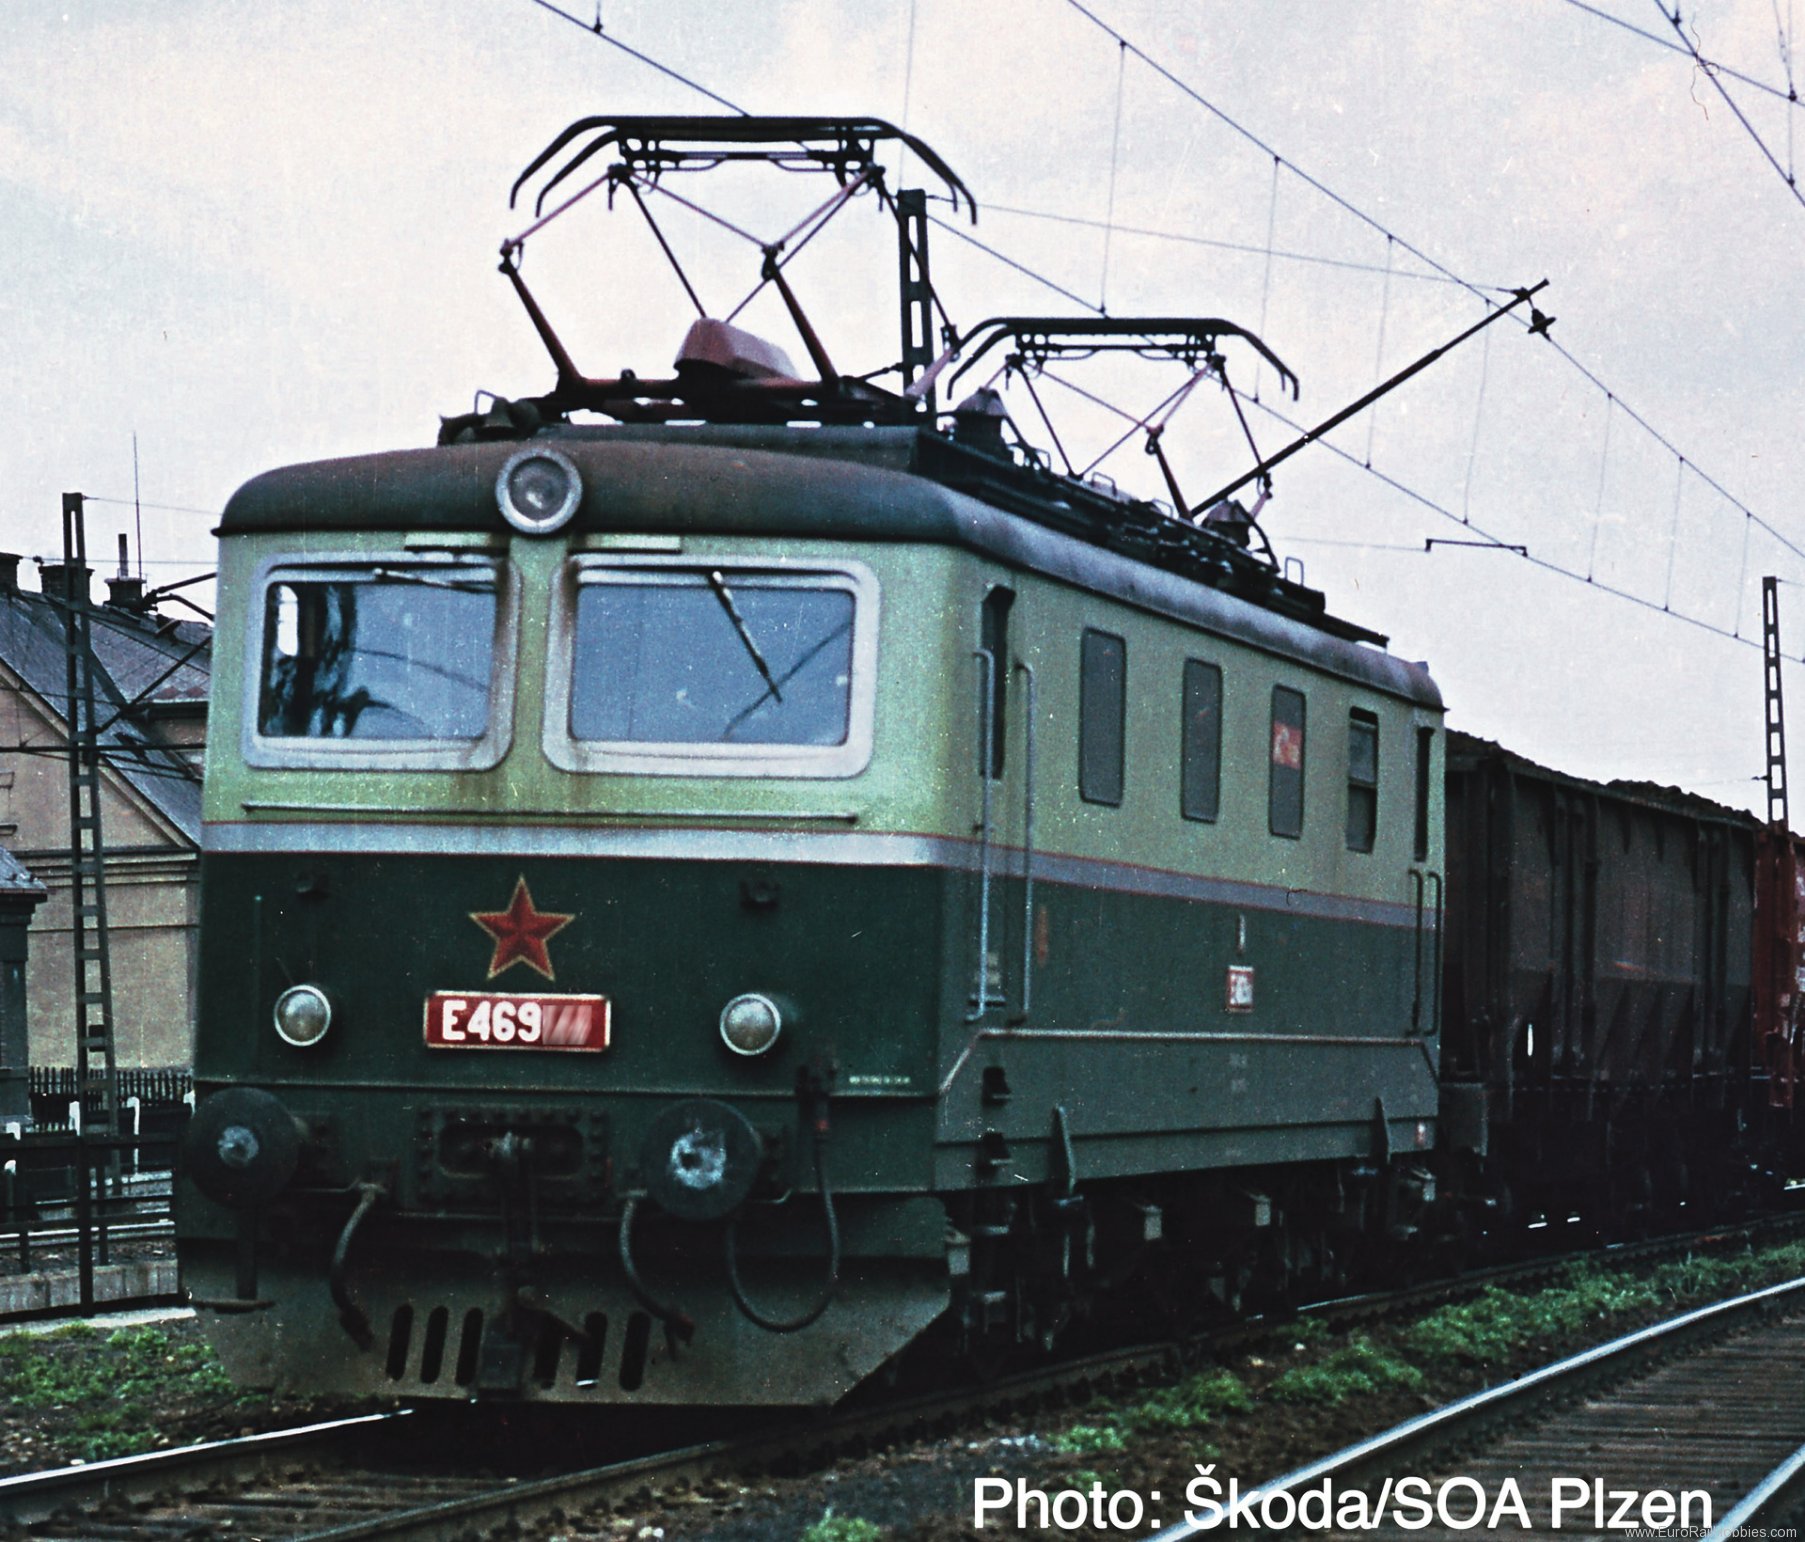 Roco 7520082 Electric locomotive E 469.1, CSD (Marklin AC 